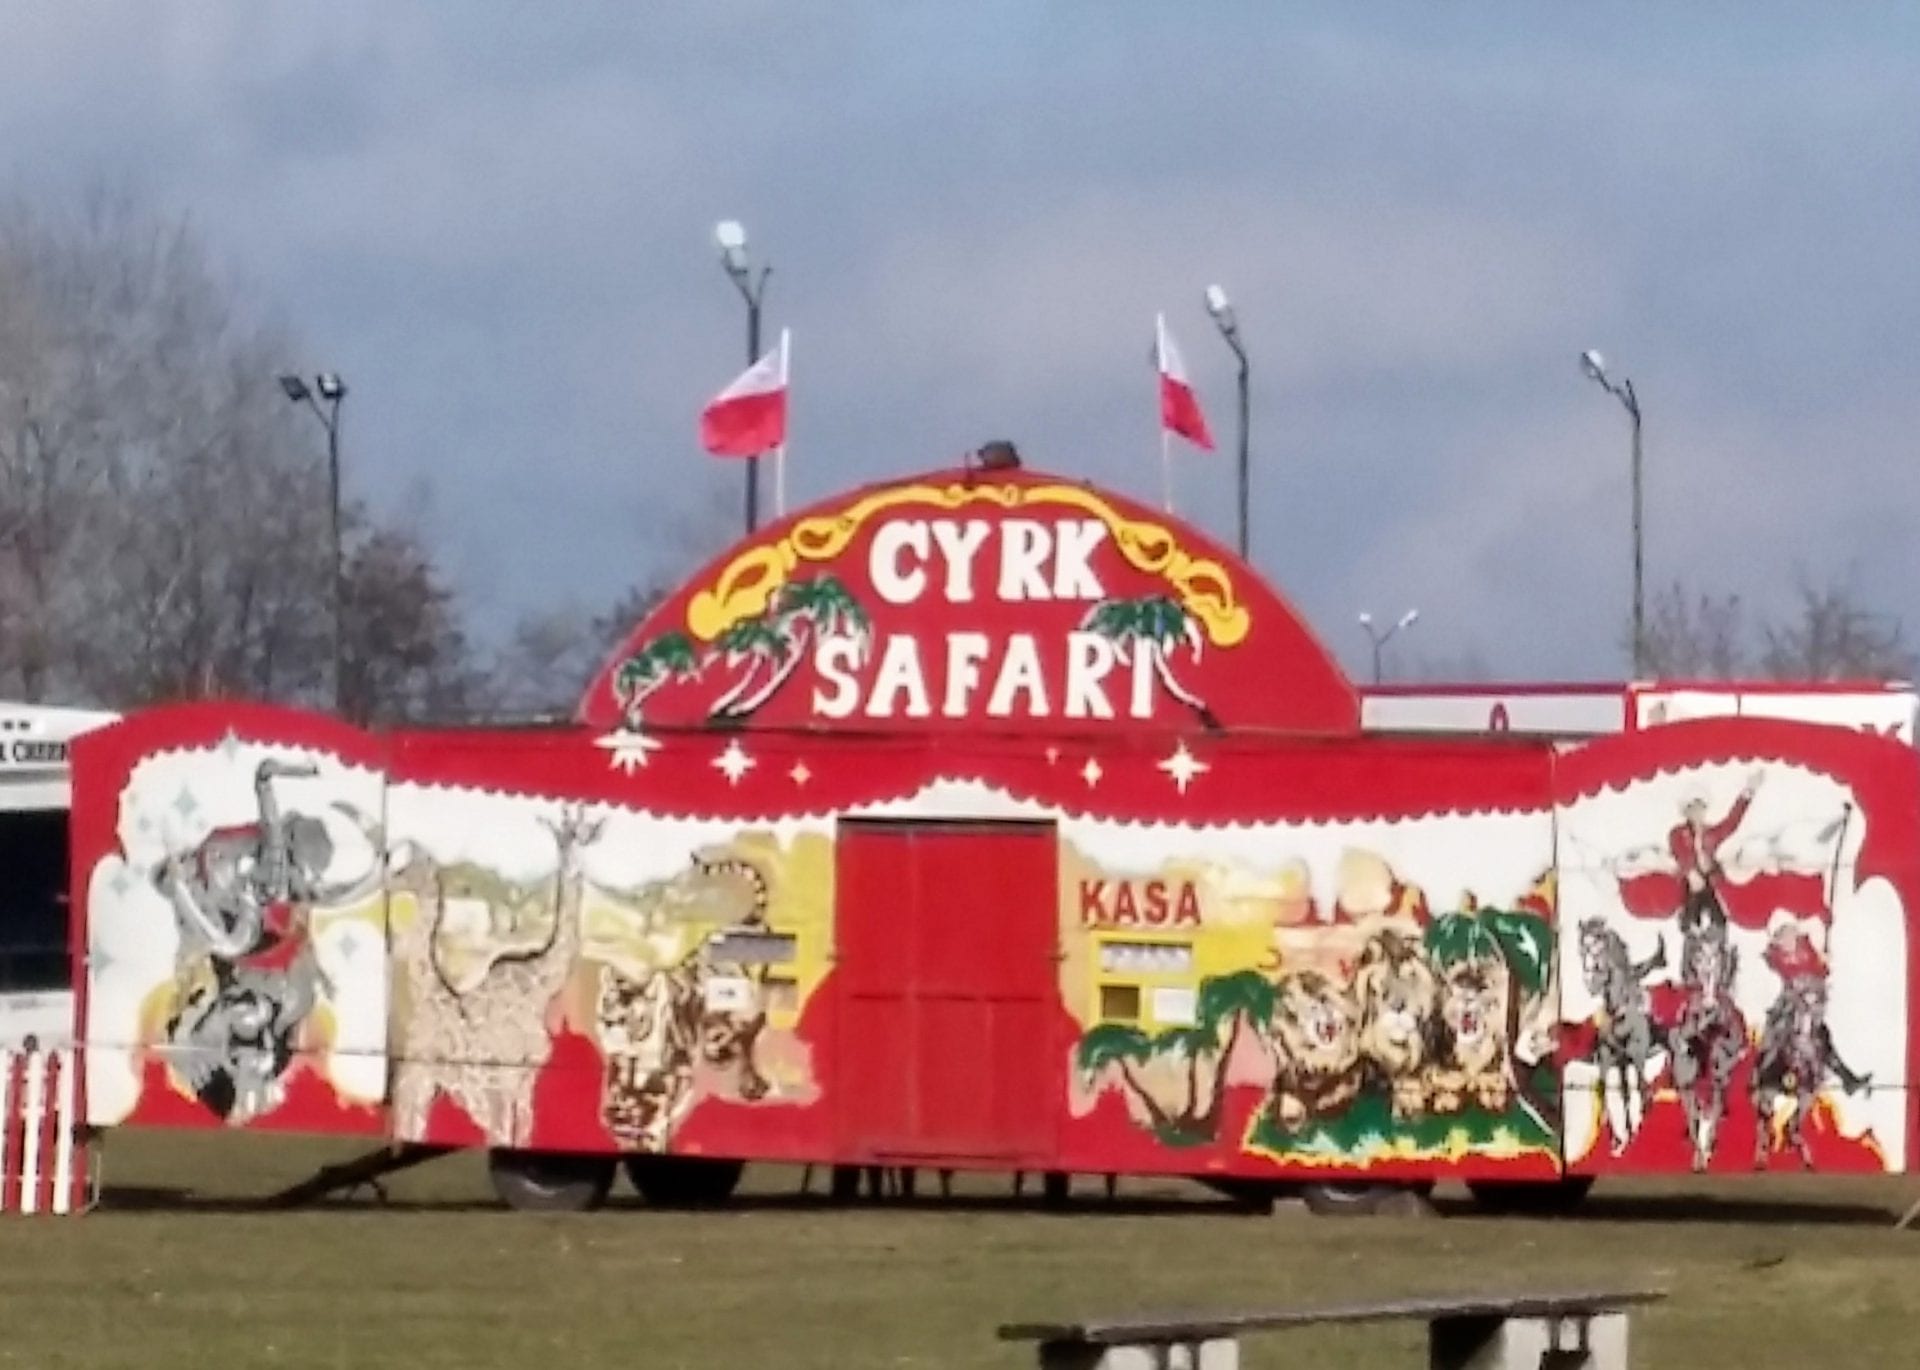 cyrk safari wroclaw